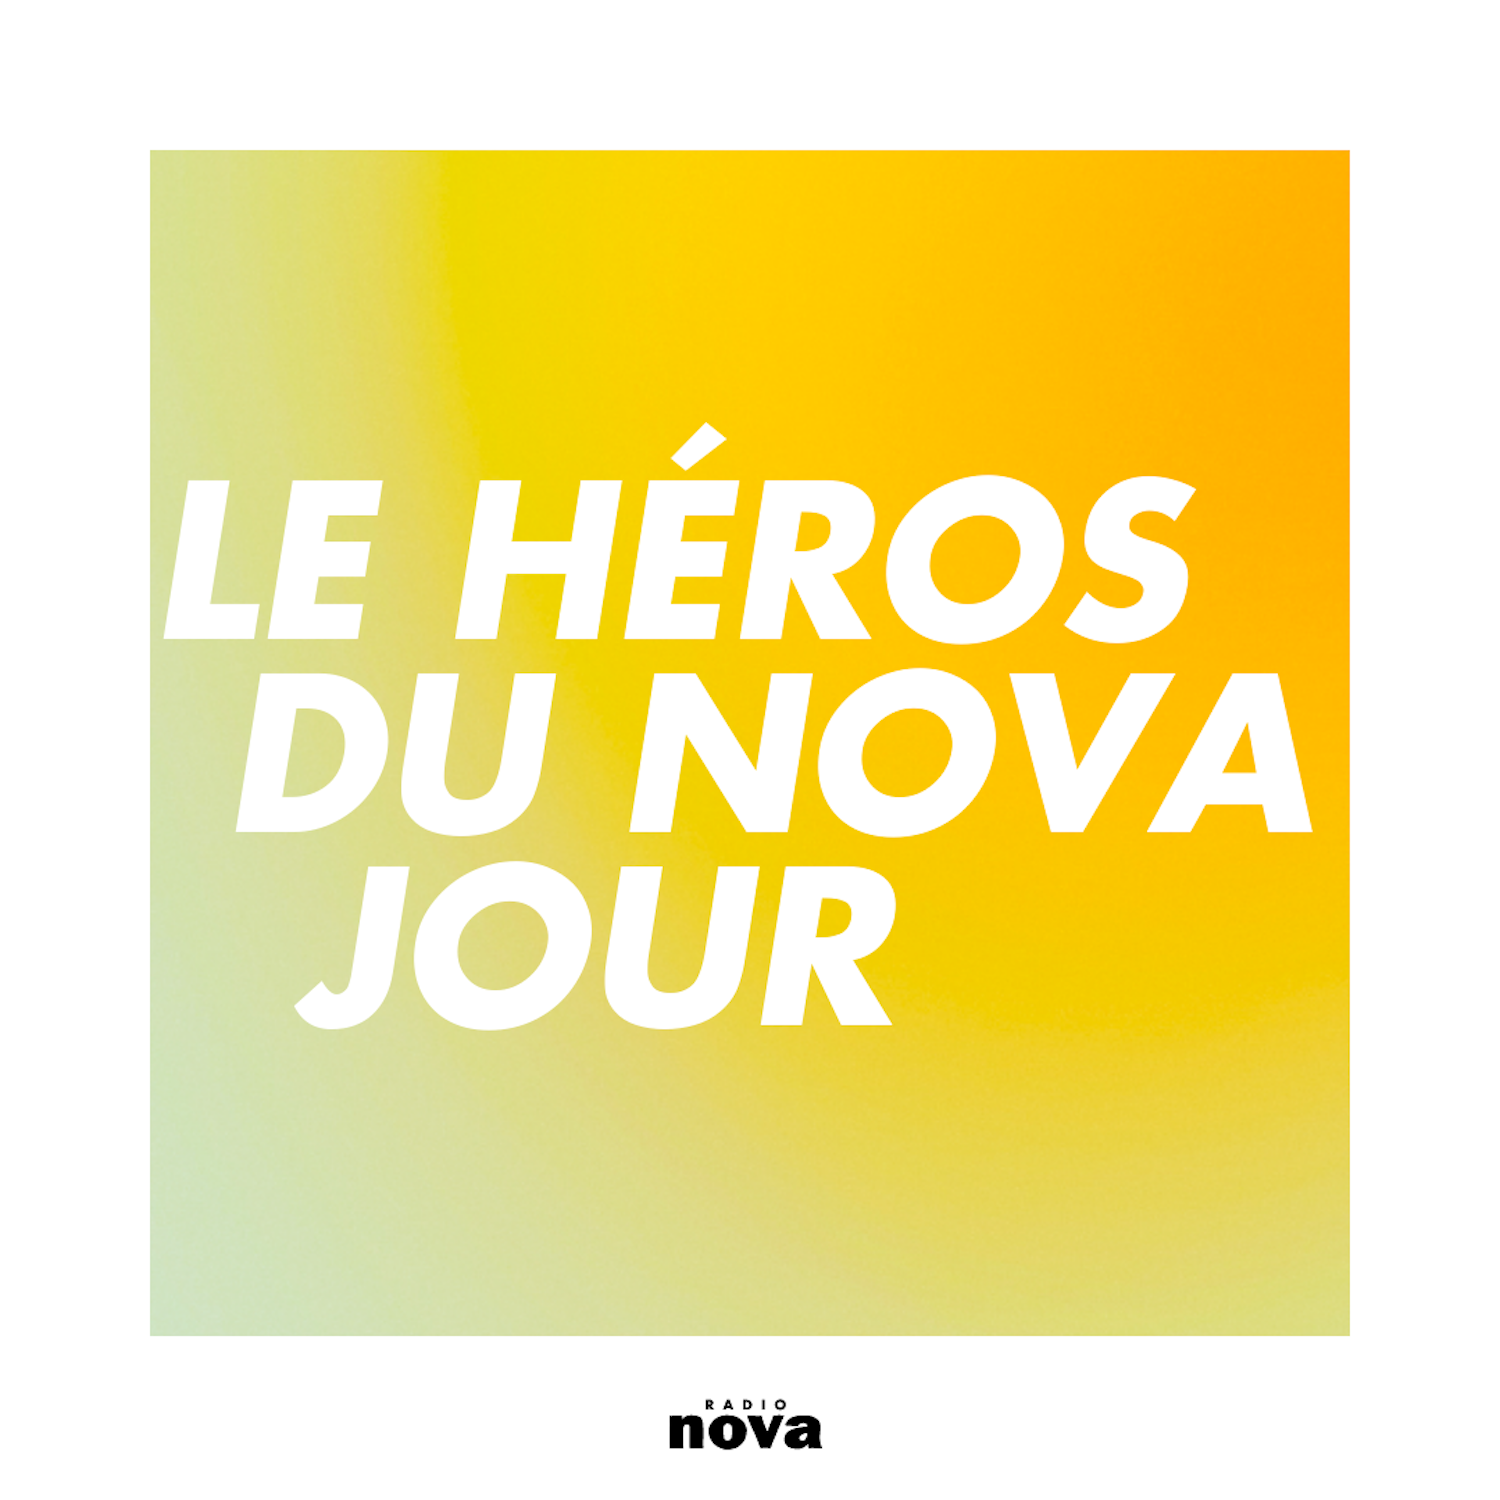 Le Héros du Nova jour photo image